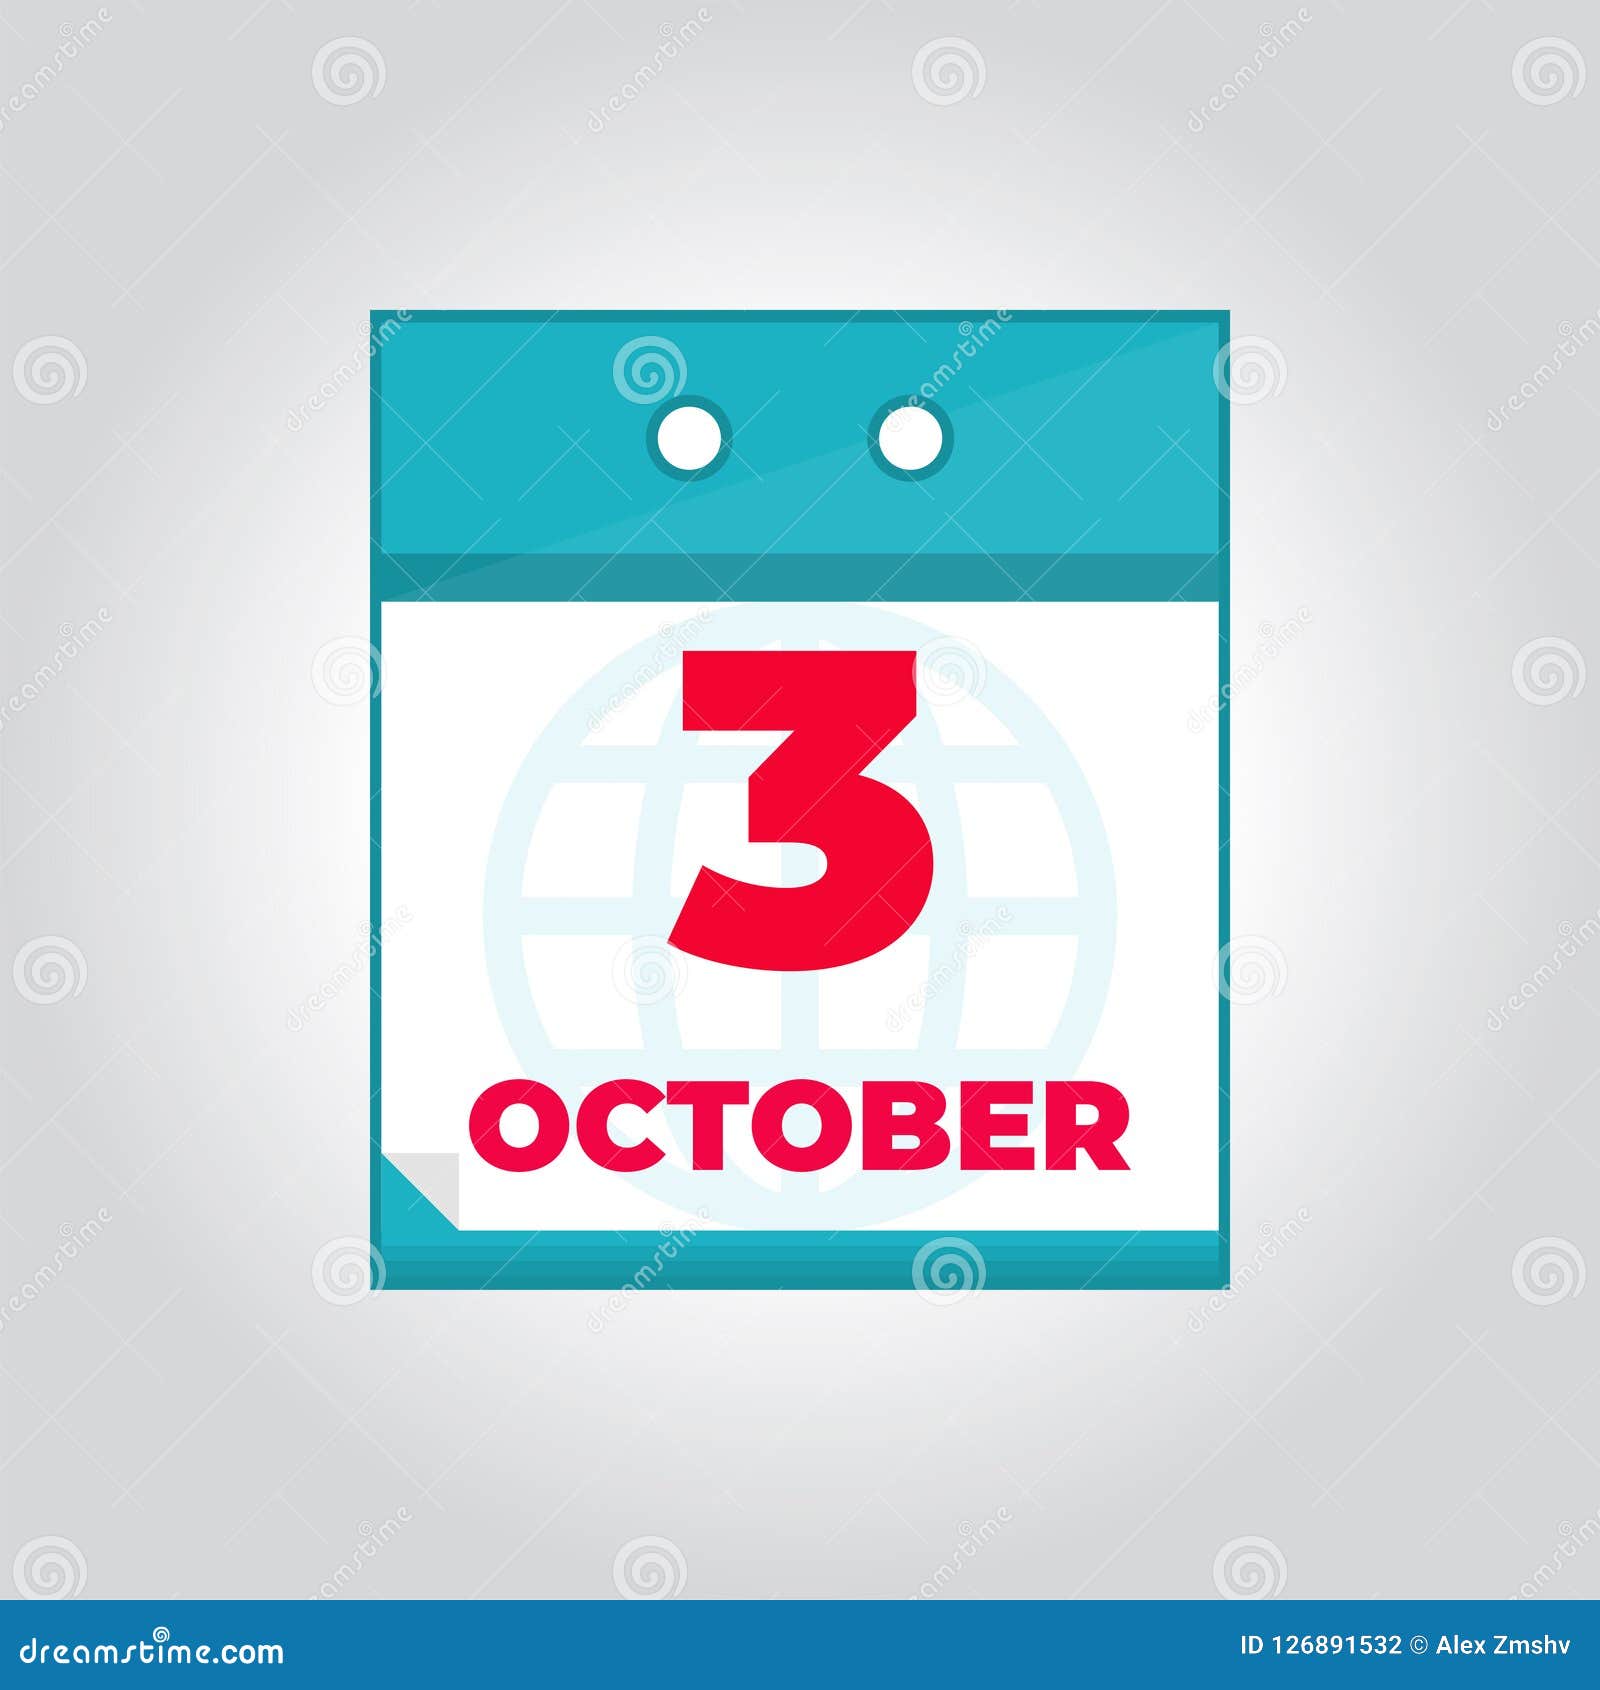 Third 3 October Flat Vector Daily Calendar Icon Stock Vector